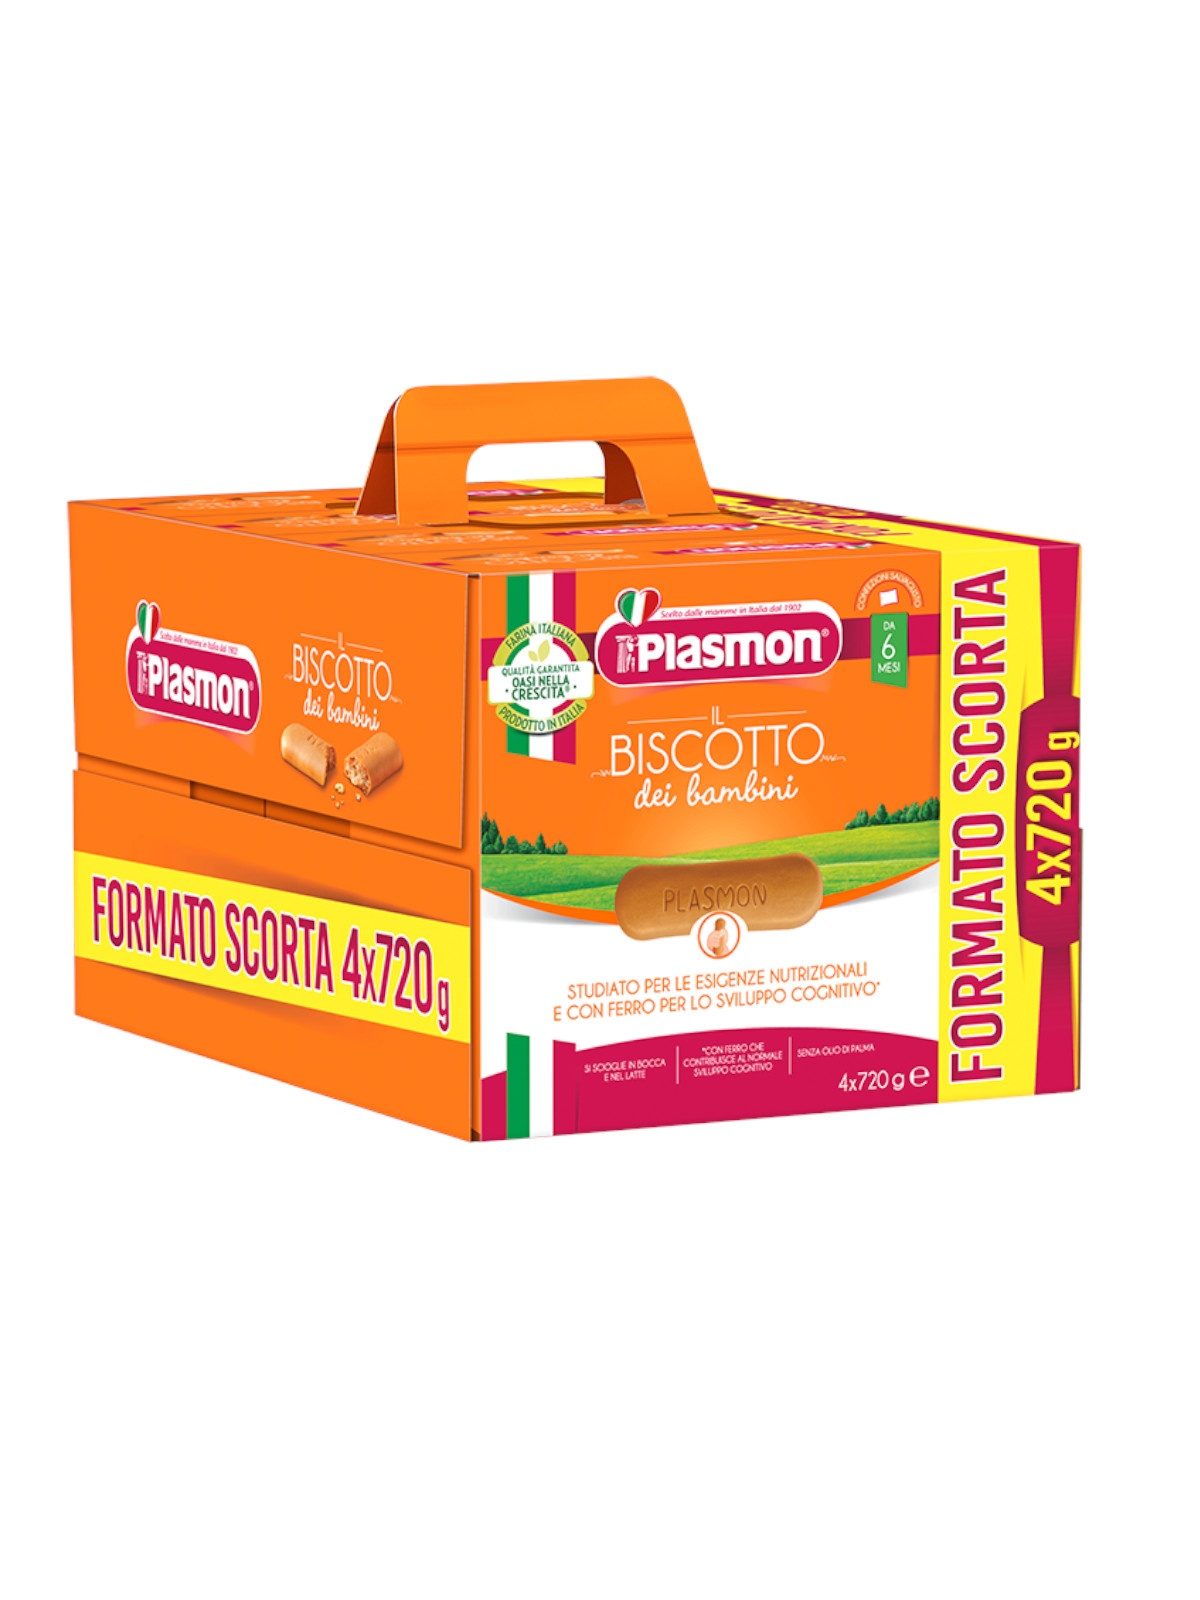 Plasmon - Biscotto Classico 4x720g - Bimbostore